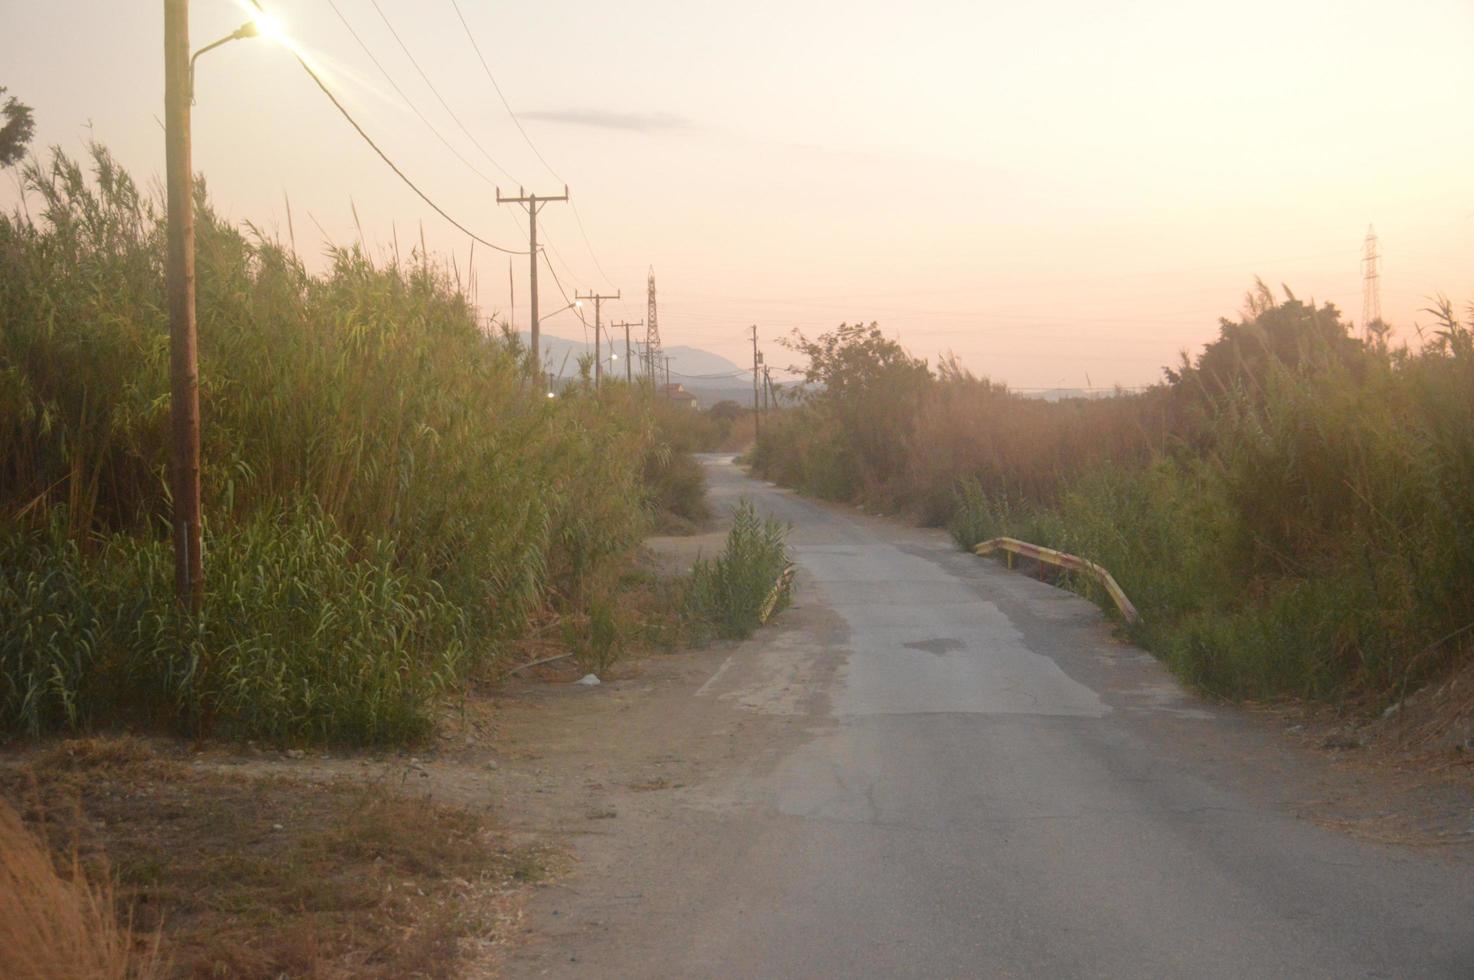 rue sur l'île de rhodes en grèce photo